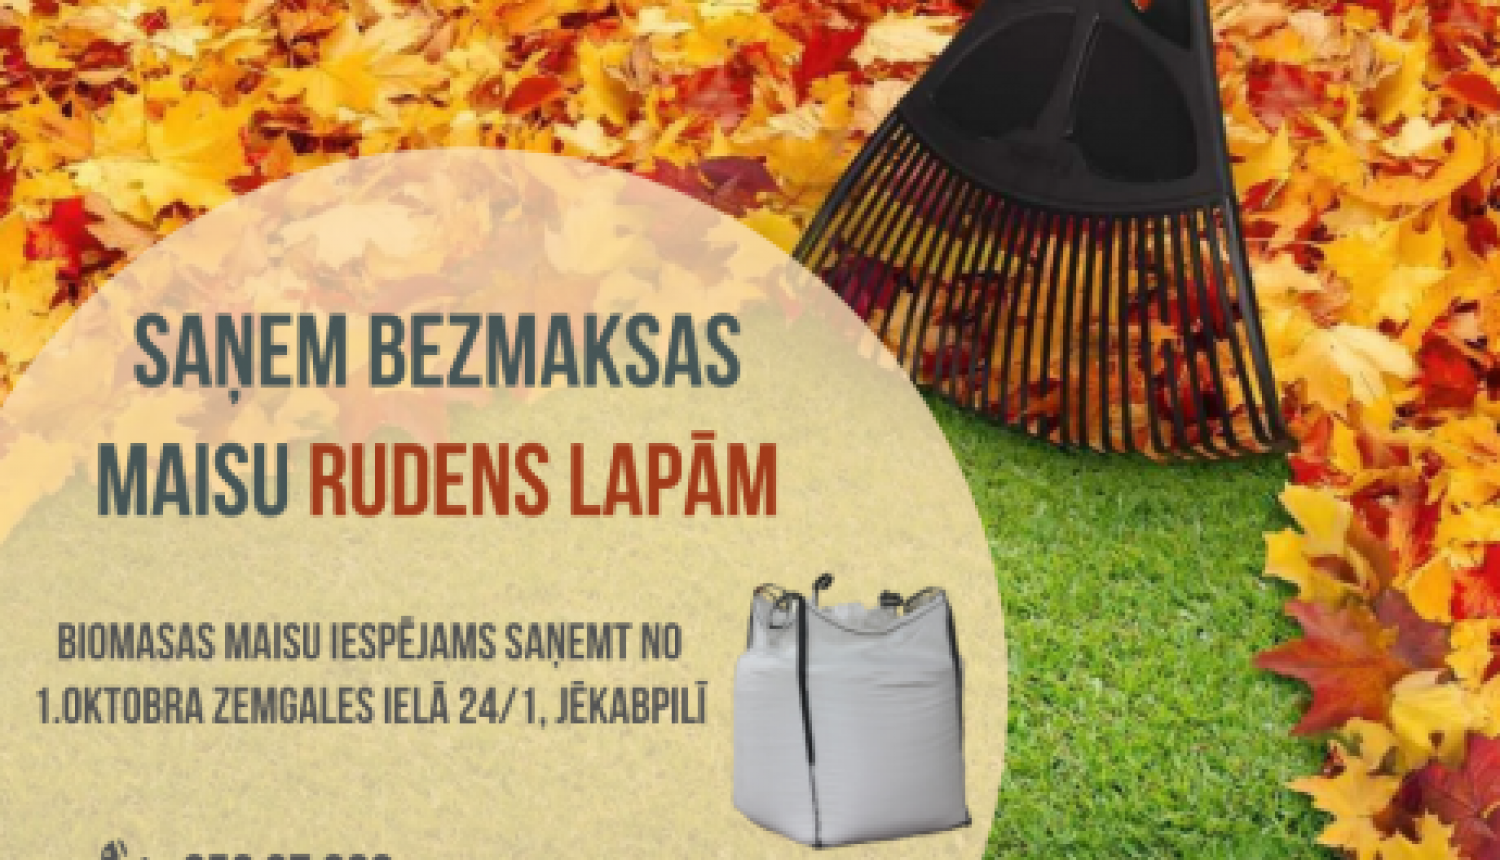 No 1.oktobra iespējams saņemt bezmaksas maisu rudens lapām